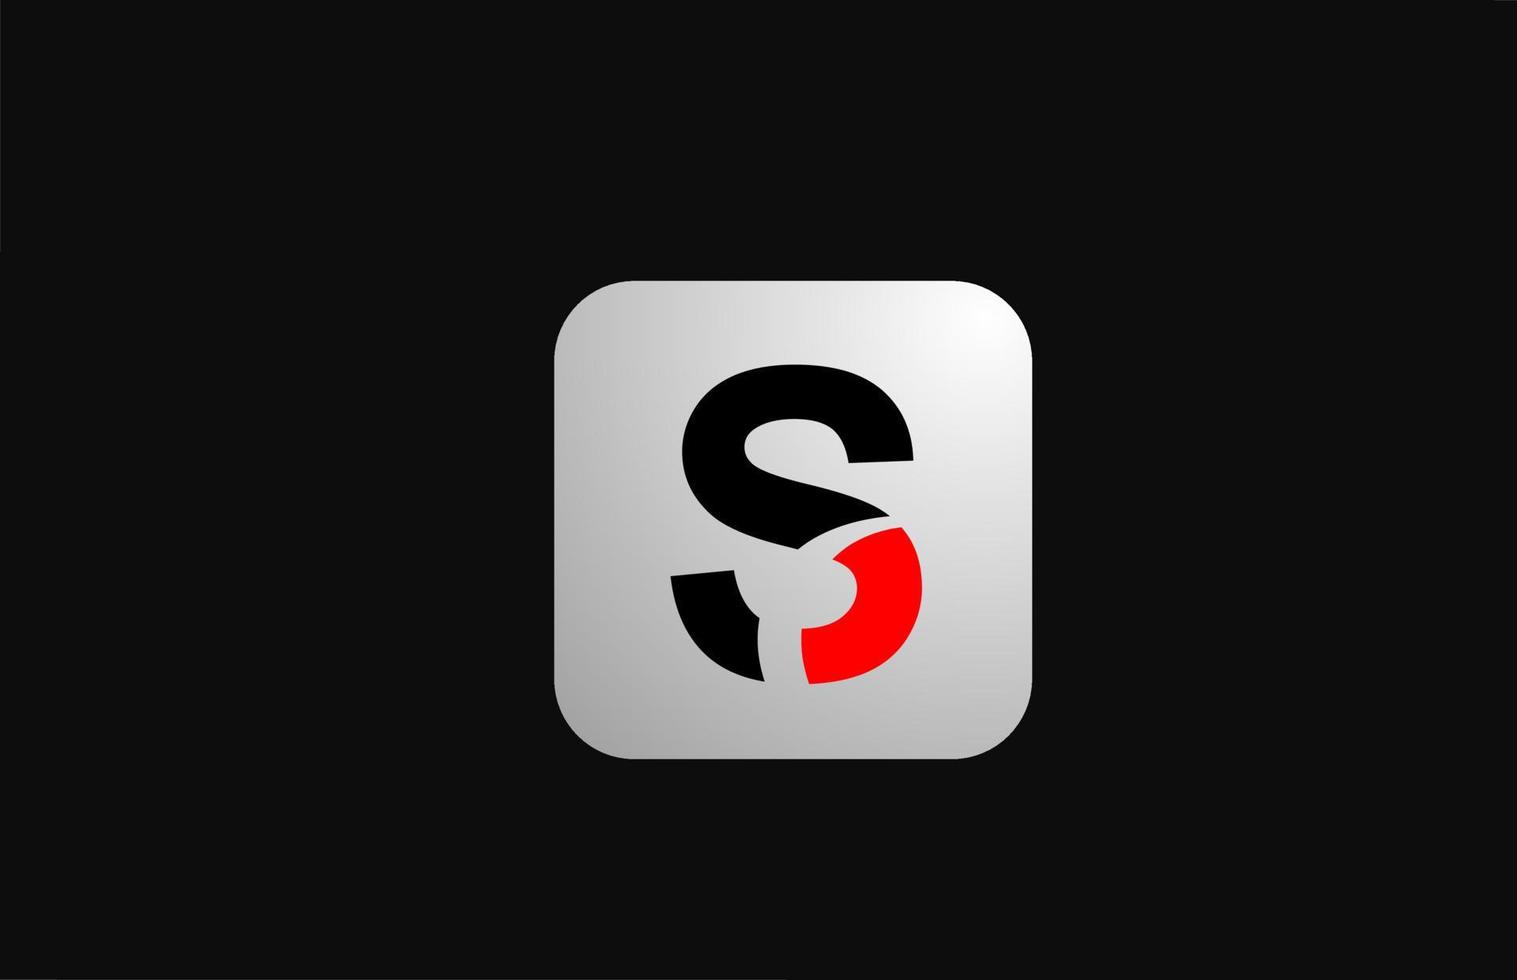 s alfabet letter logo icoon voor zaken en bedrijf met eenvoudig zwart-wit ontwerp vector